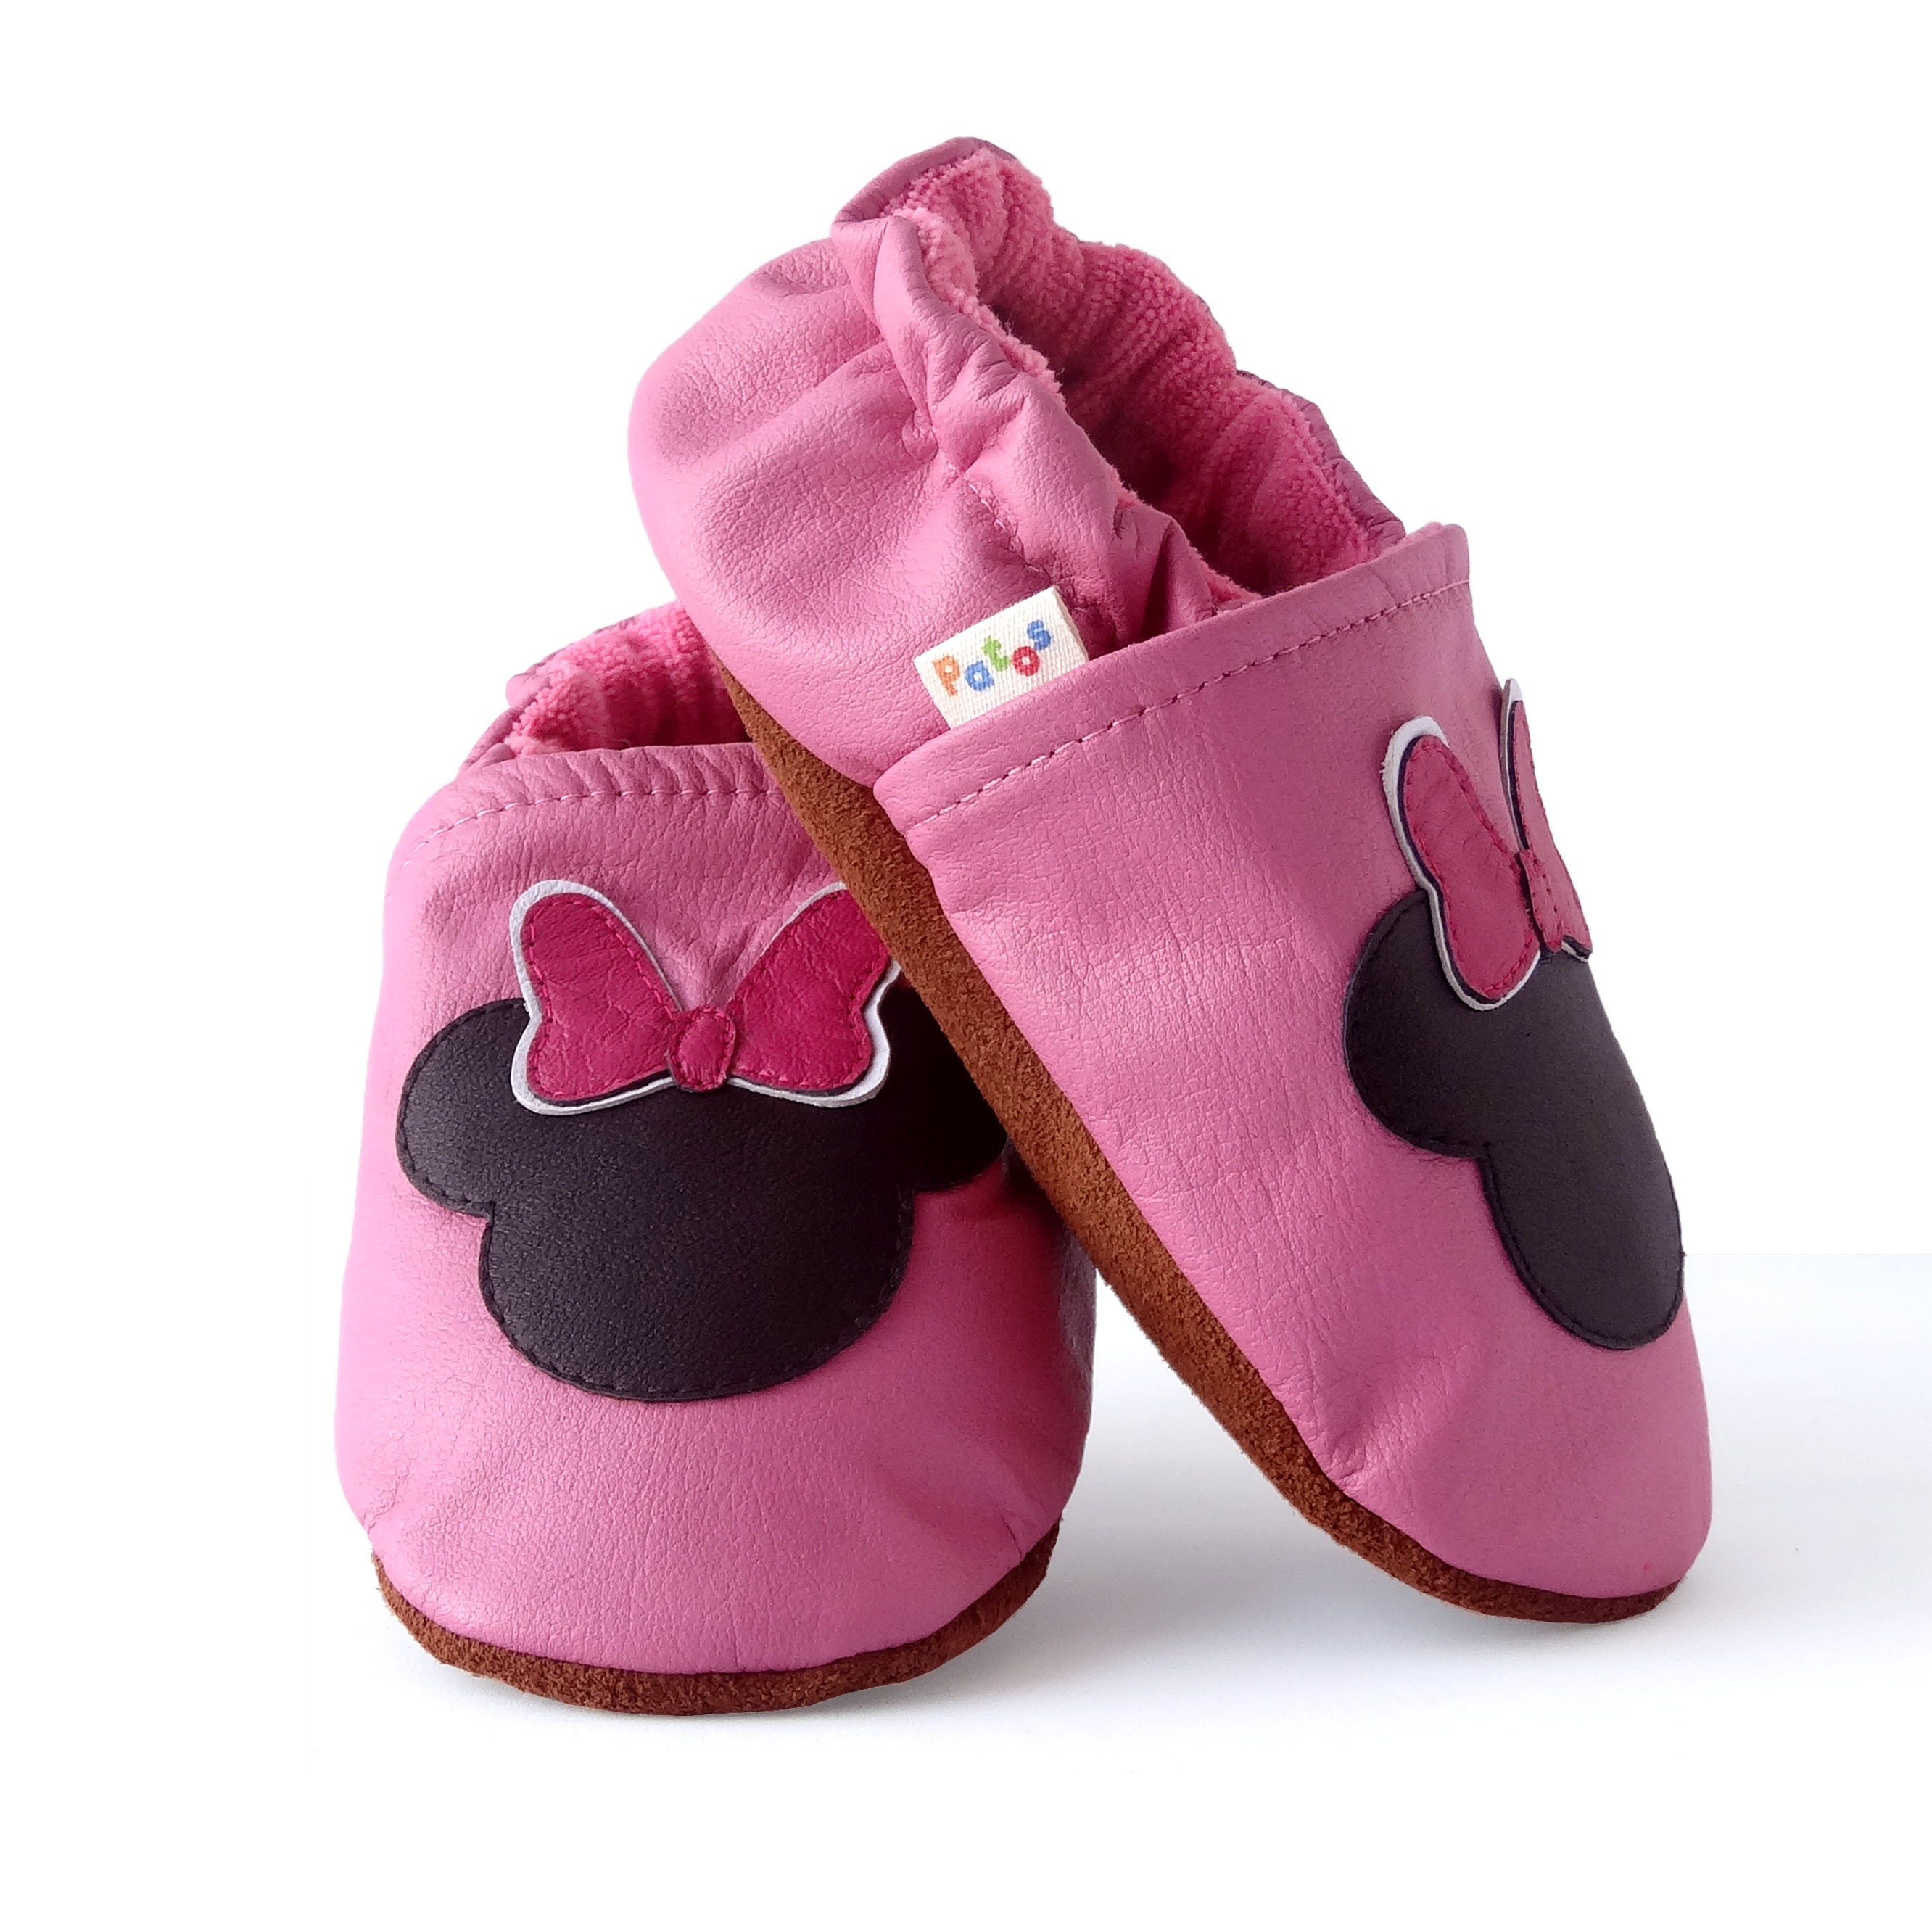 Zapatos para bebe sin suela. Minnie - Patos Zapatos